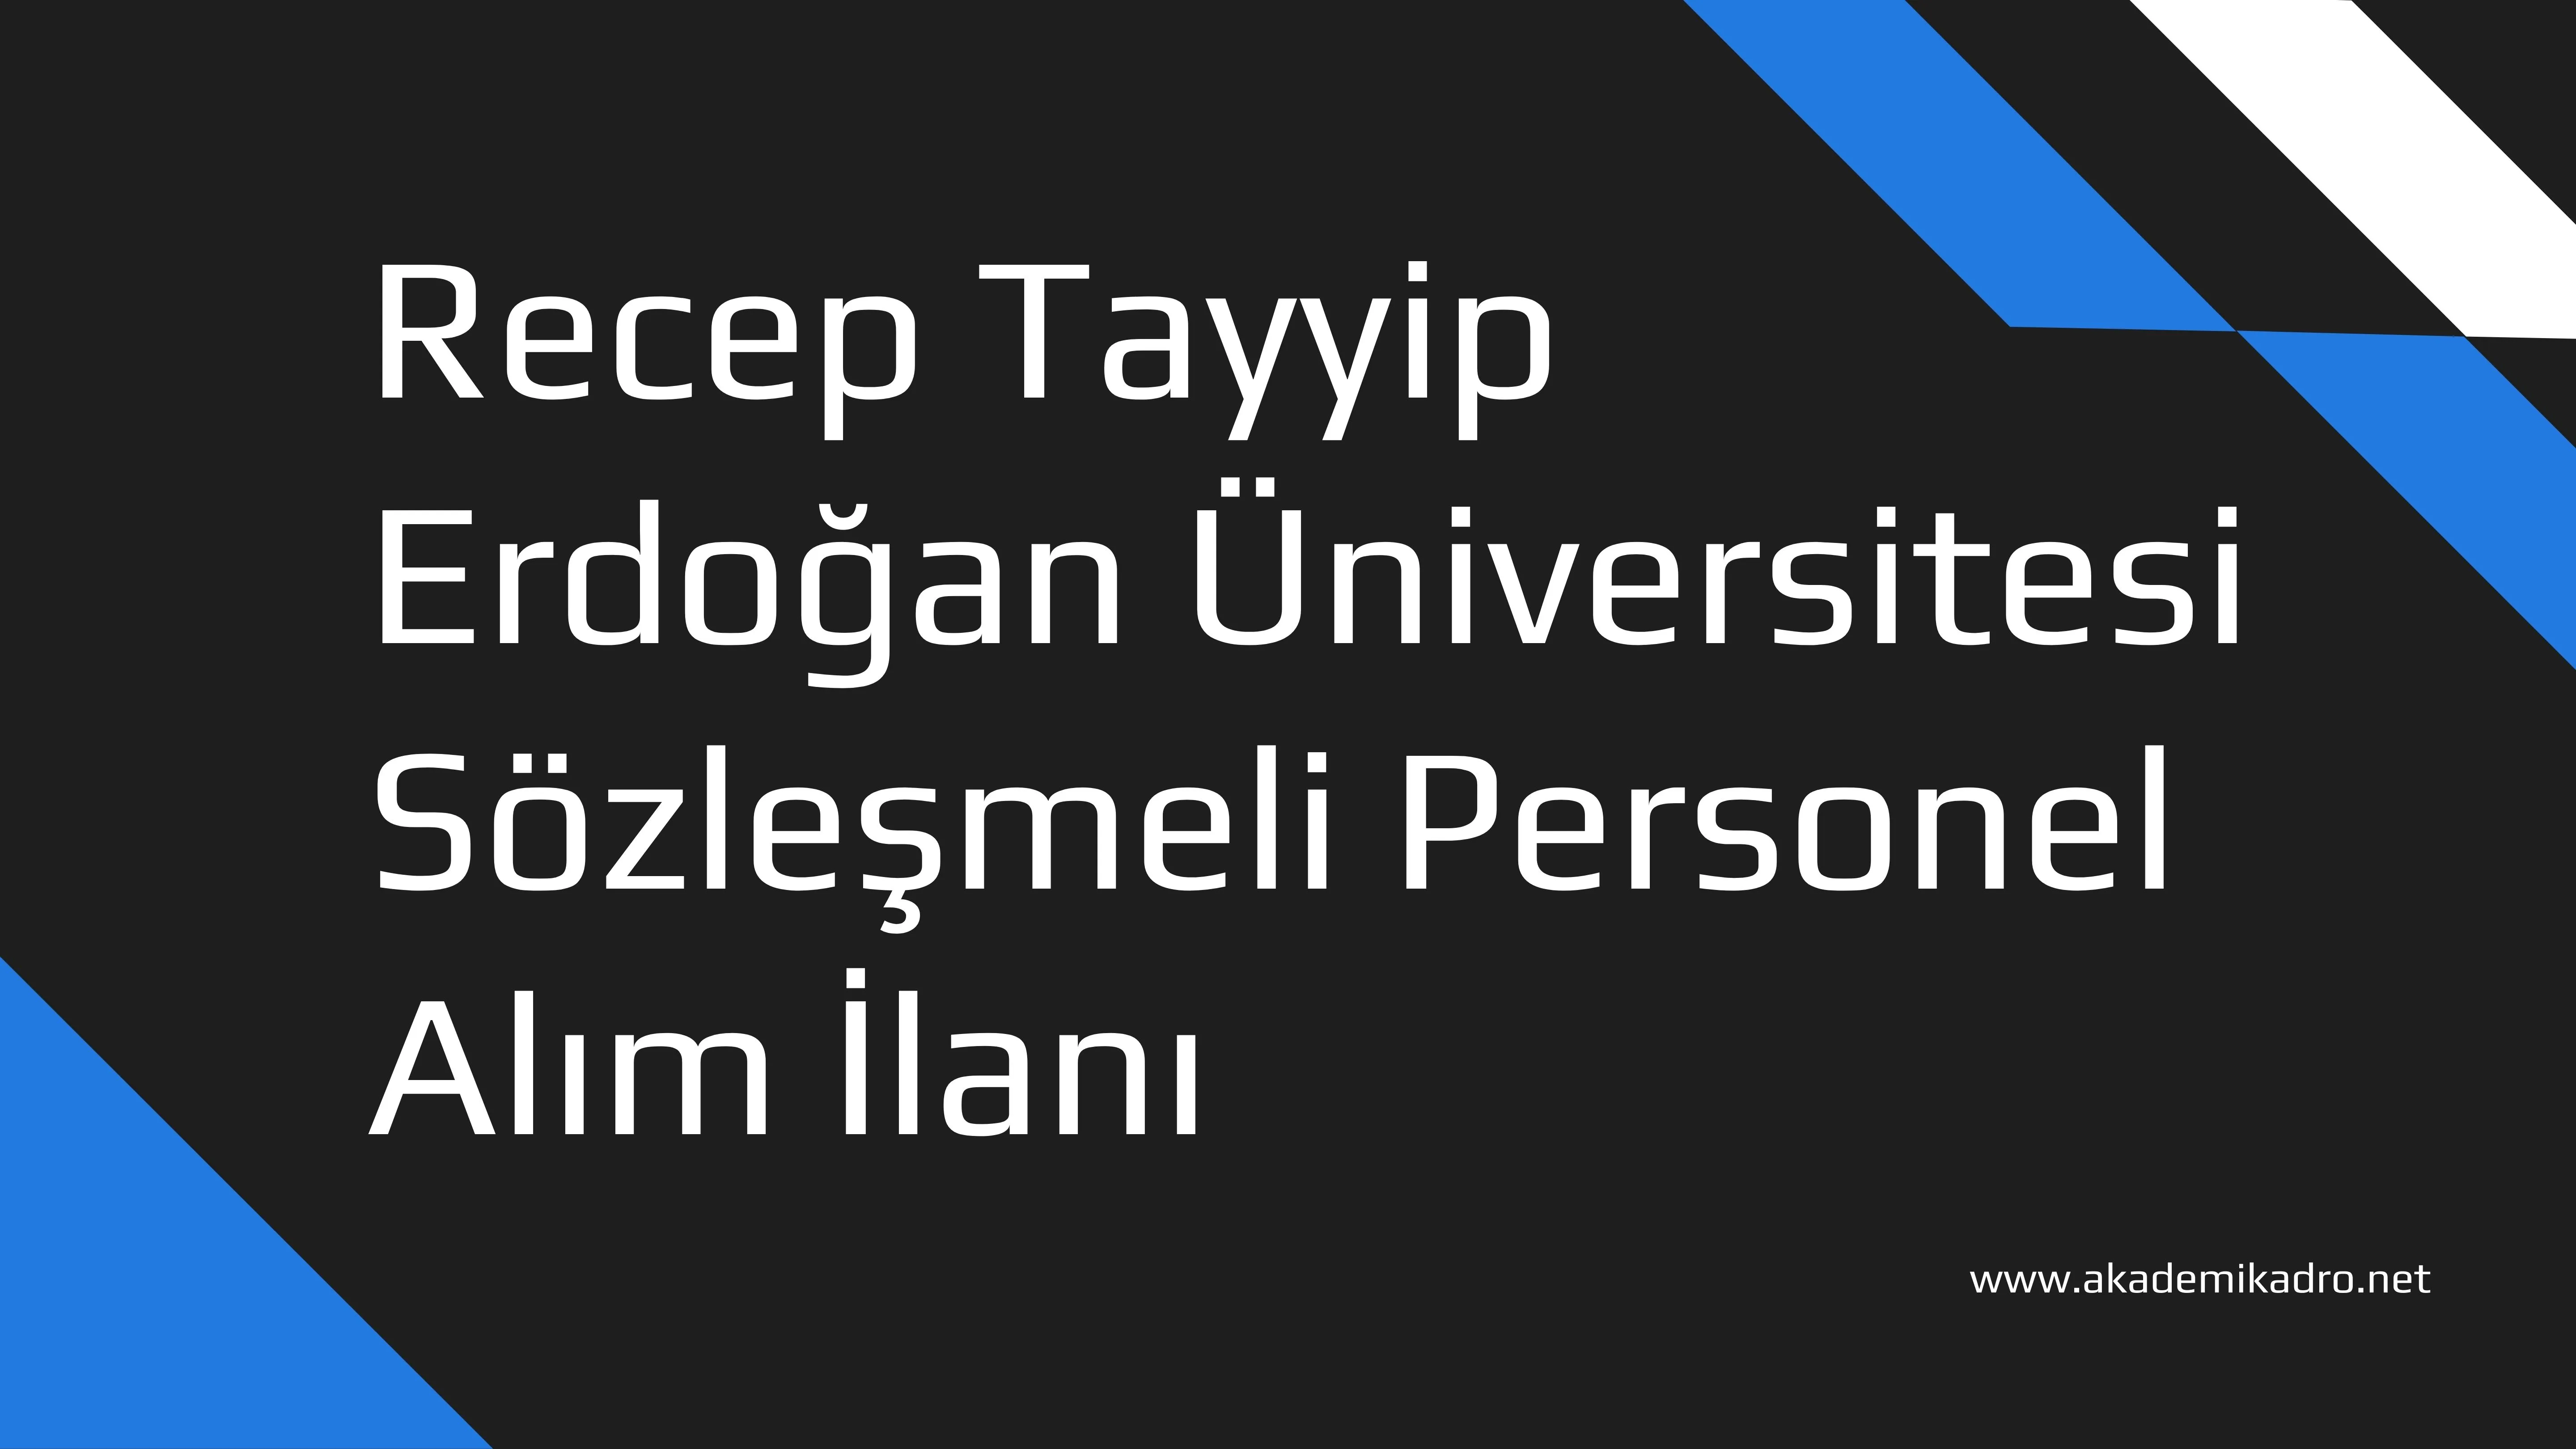 Recep Tayyip Erdoğan Üniversitesi Lisans mezunu KPSS puanı ile 80 Sözleşmeli personel alacak.